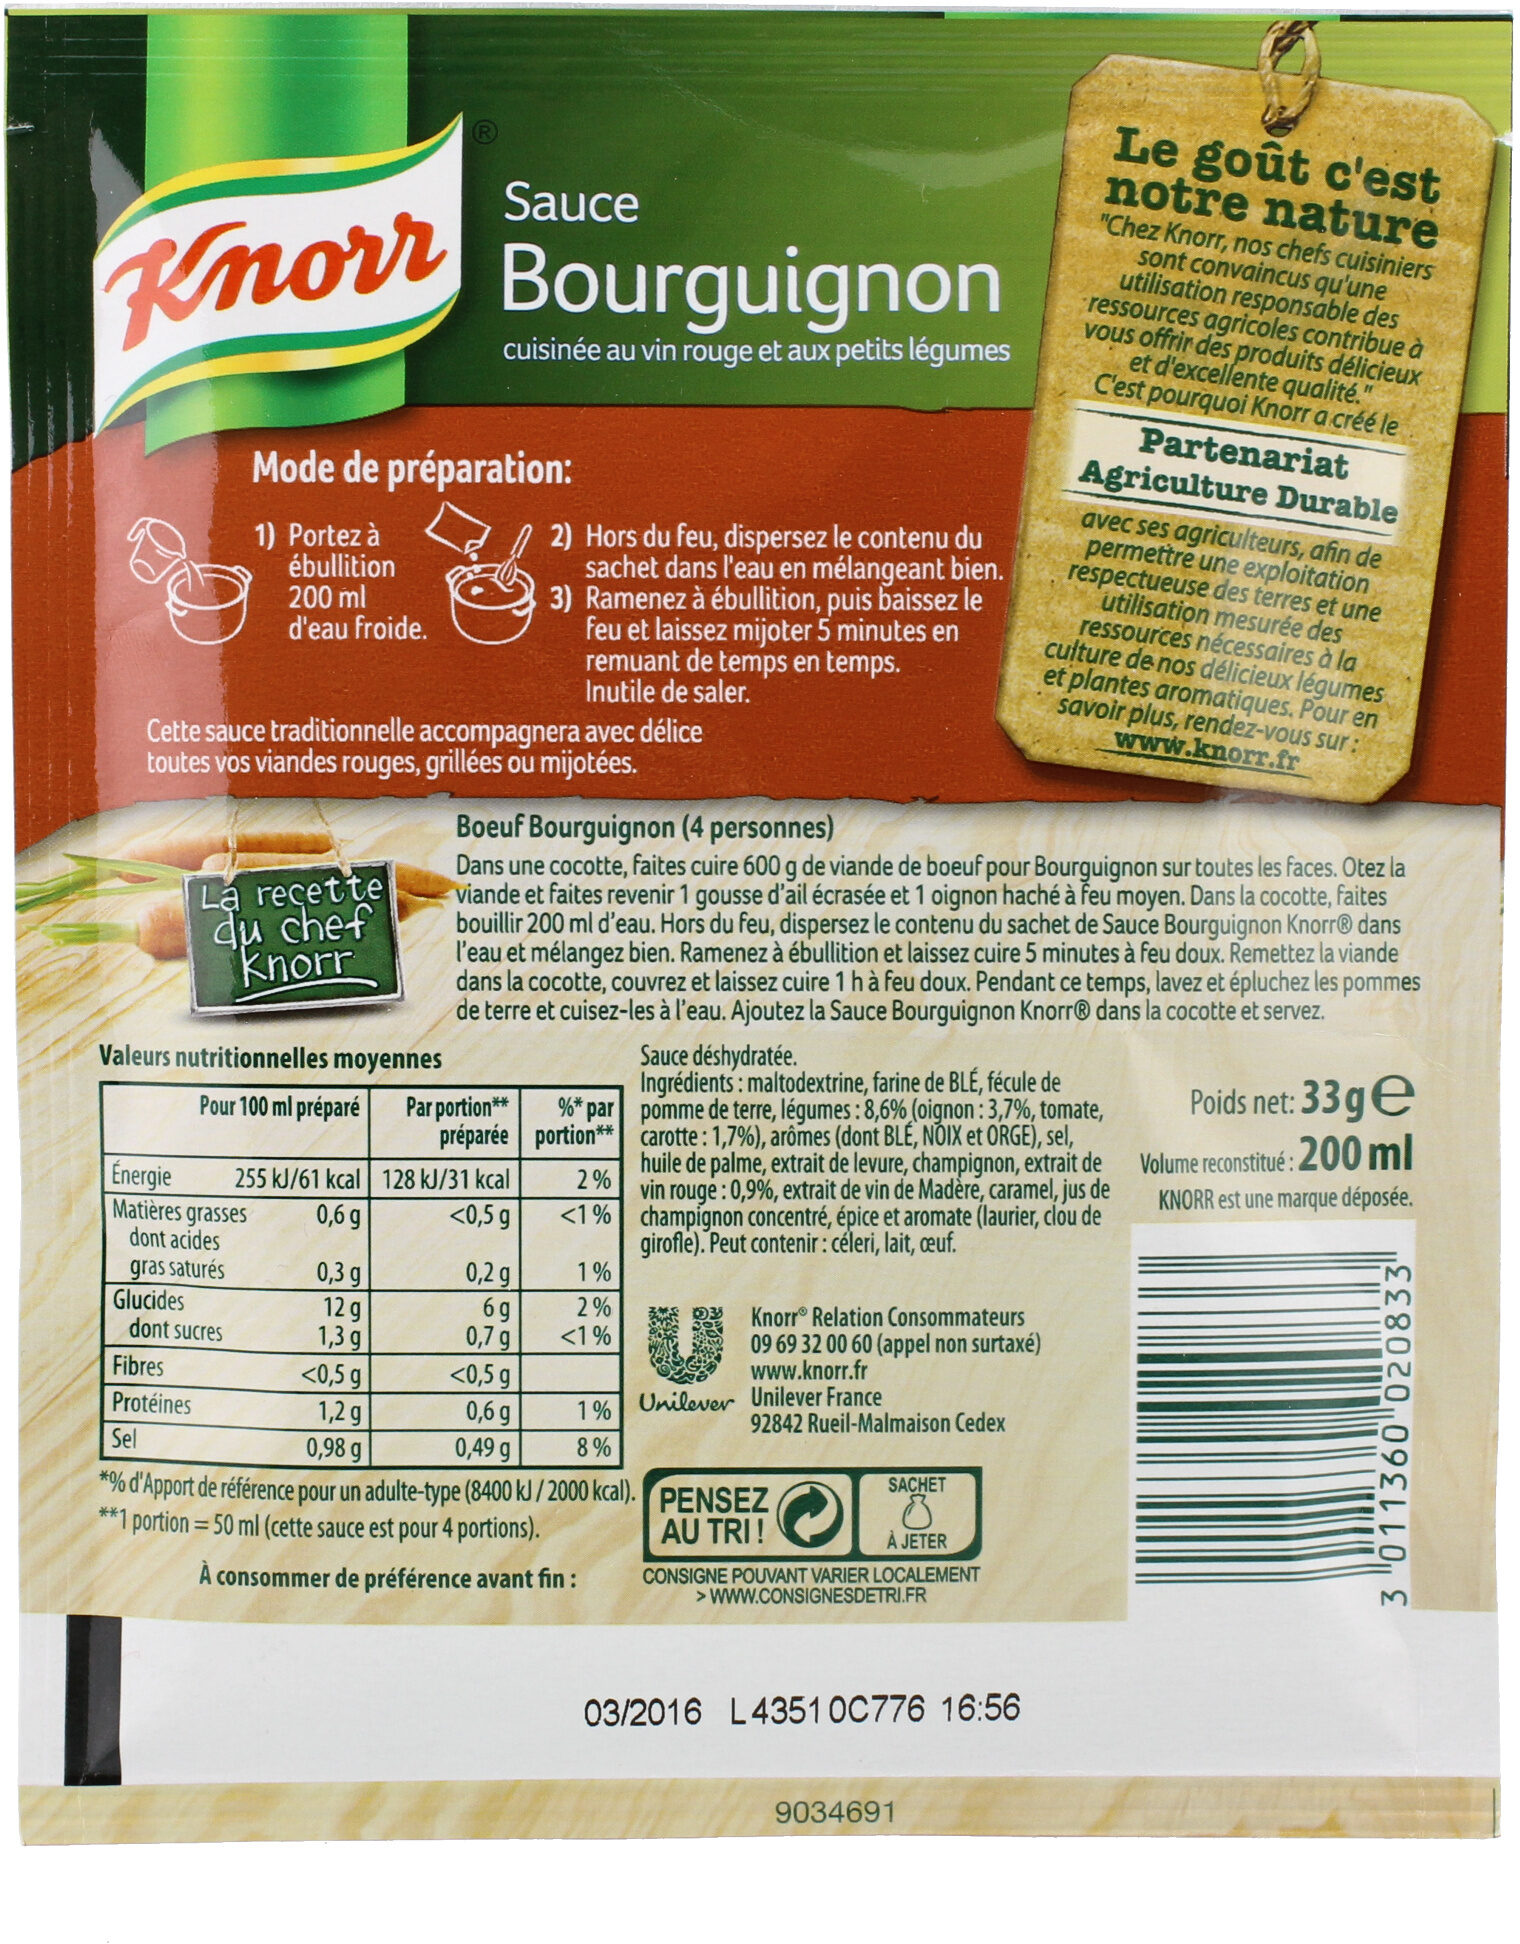 Knorr Sauce Déshydratée Bourguignon au Vin Rouge et Petits Légumes 33g - Nutrition facts - fr